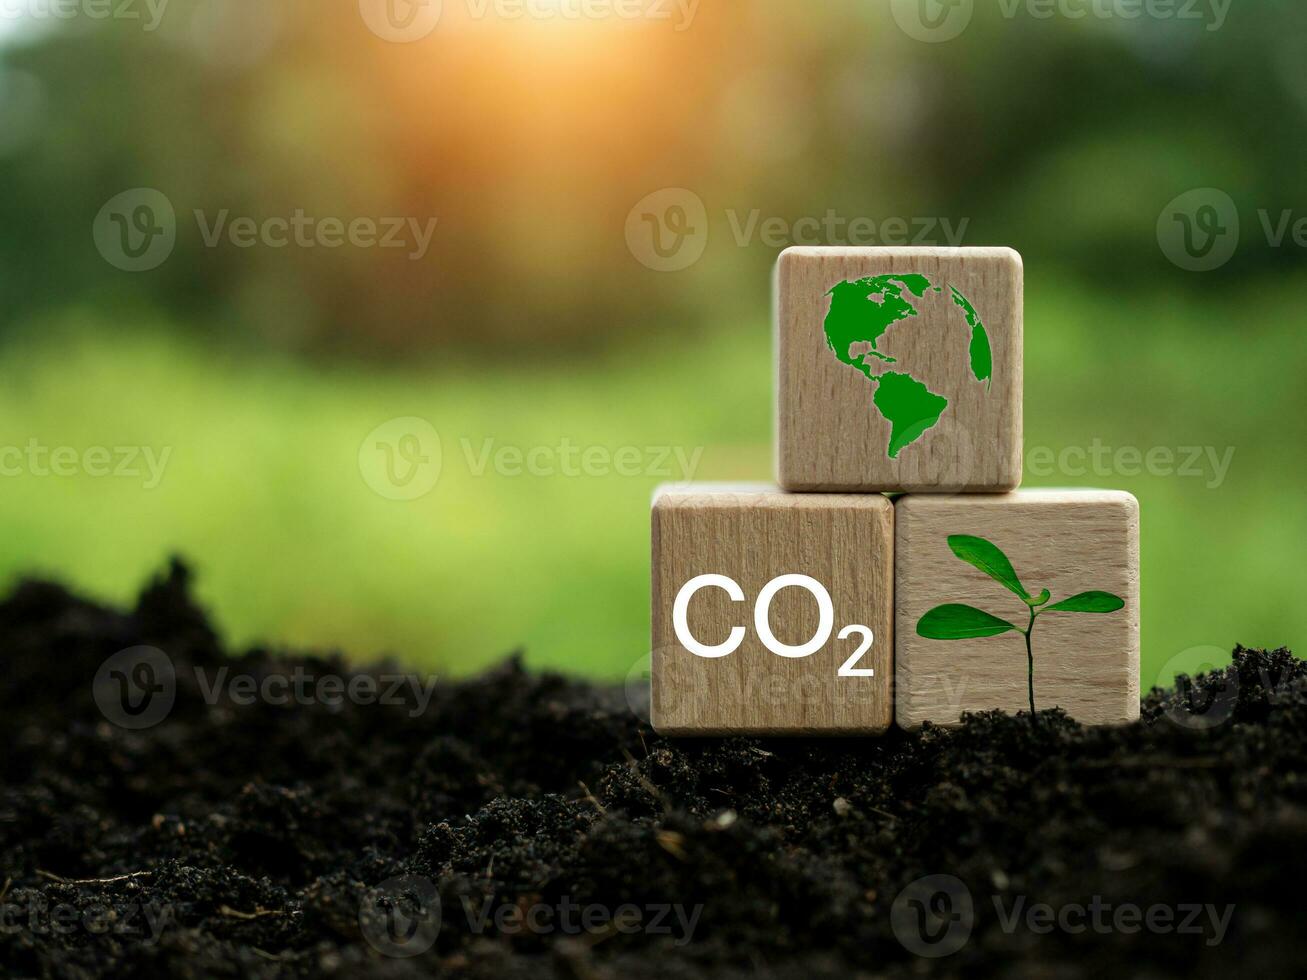 co2 emissione riduzione concetto, pulito e amichevole ambiente senza carbonio biossido emissioni. piantare alberi per ridurre co2 emissioni, ambientale protezione concetto. foto